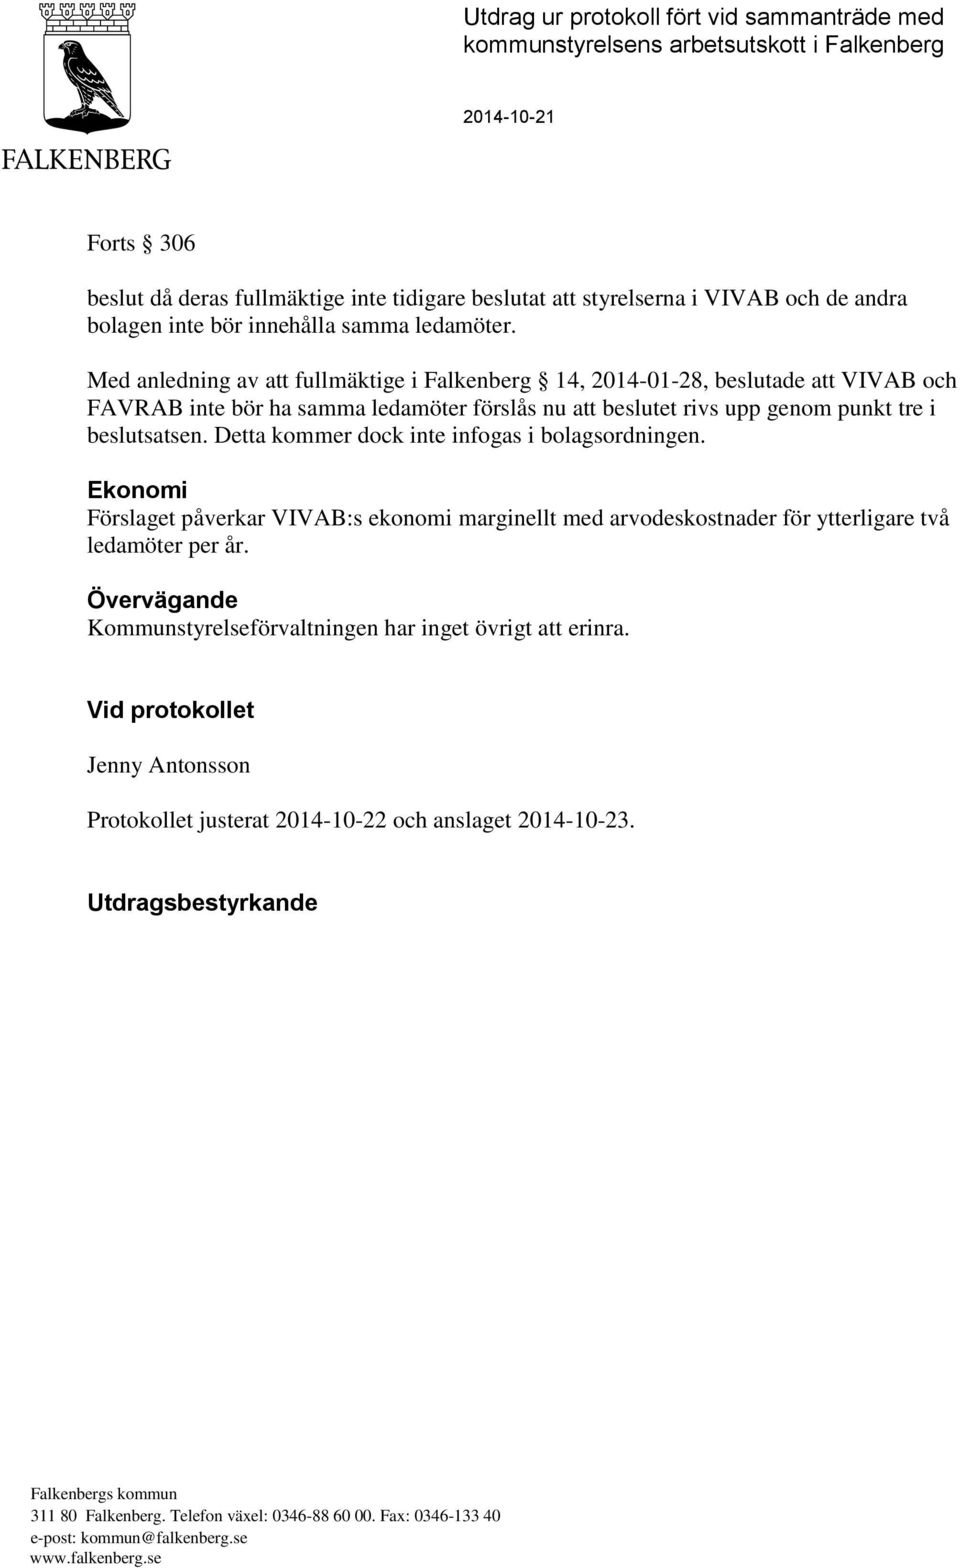 Med anledning av att fullmäktige i Falkenberg 14, 2014-01-28, beslutade att VIVAB och FAVRAB inte bör ha samma ledamöter förslås nu att beslutet rivs upp genom punkt tre i beslutsatsen.